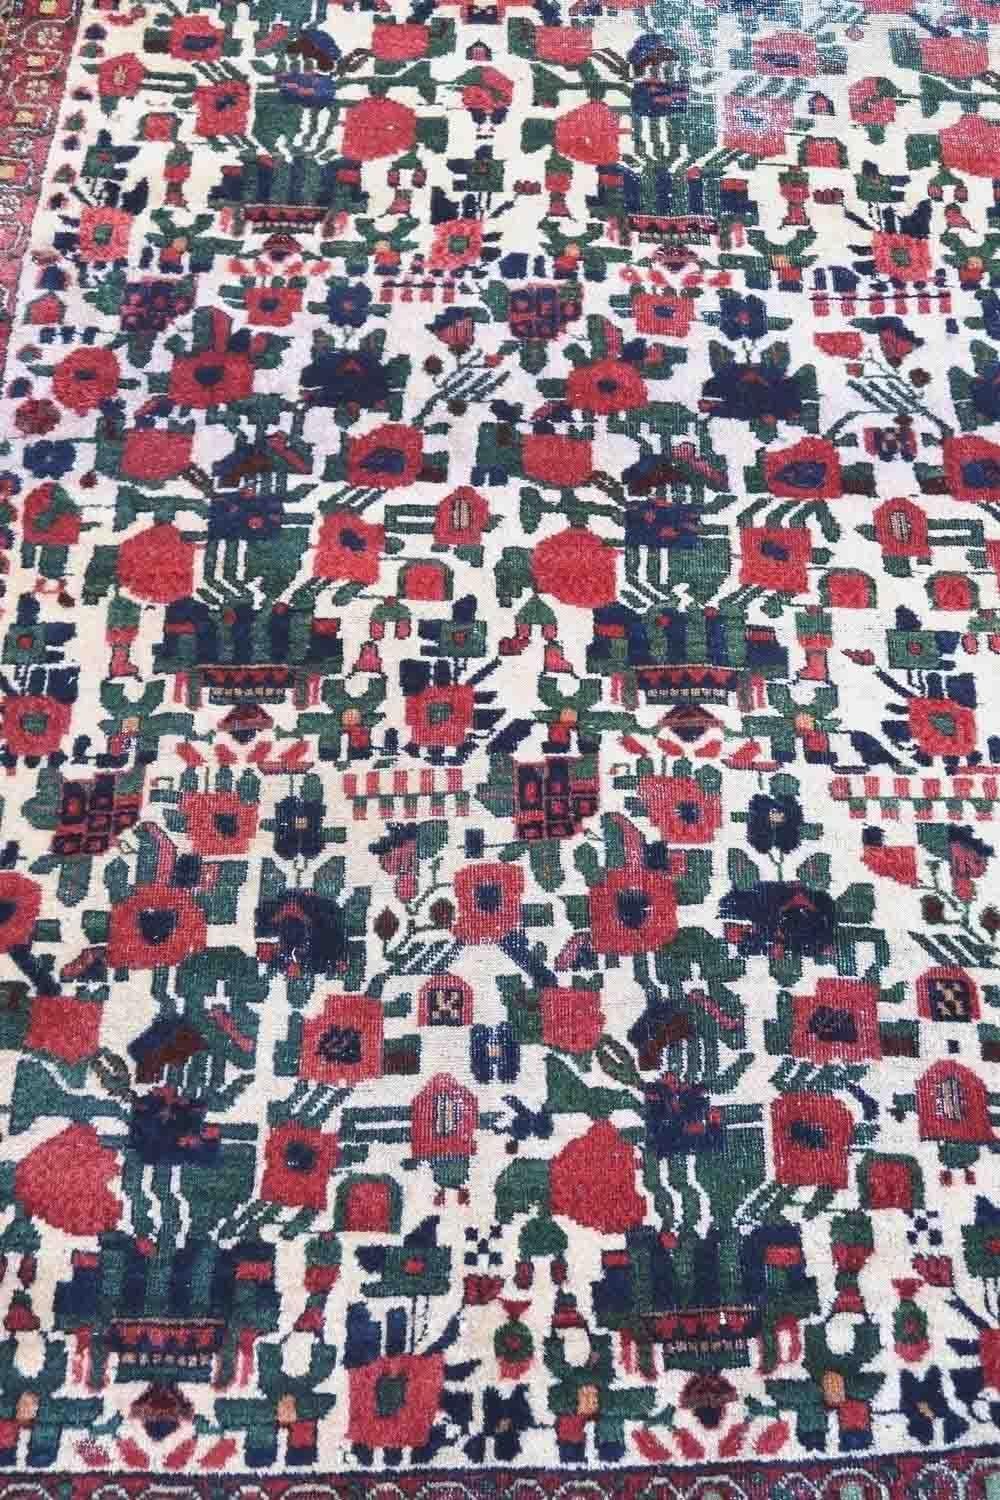 Handgefertigter antiker persischer Afshar-Teppich in weißer Farbe und mit floralem Allover-Muster. Der Teppich ist aus dem Anfang des 20. Jahrhunderts in originalem Zustand, der Teppich hat an einigen Stellen niedrigen Flor.

-Zustand: original,